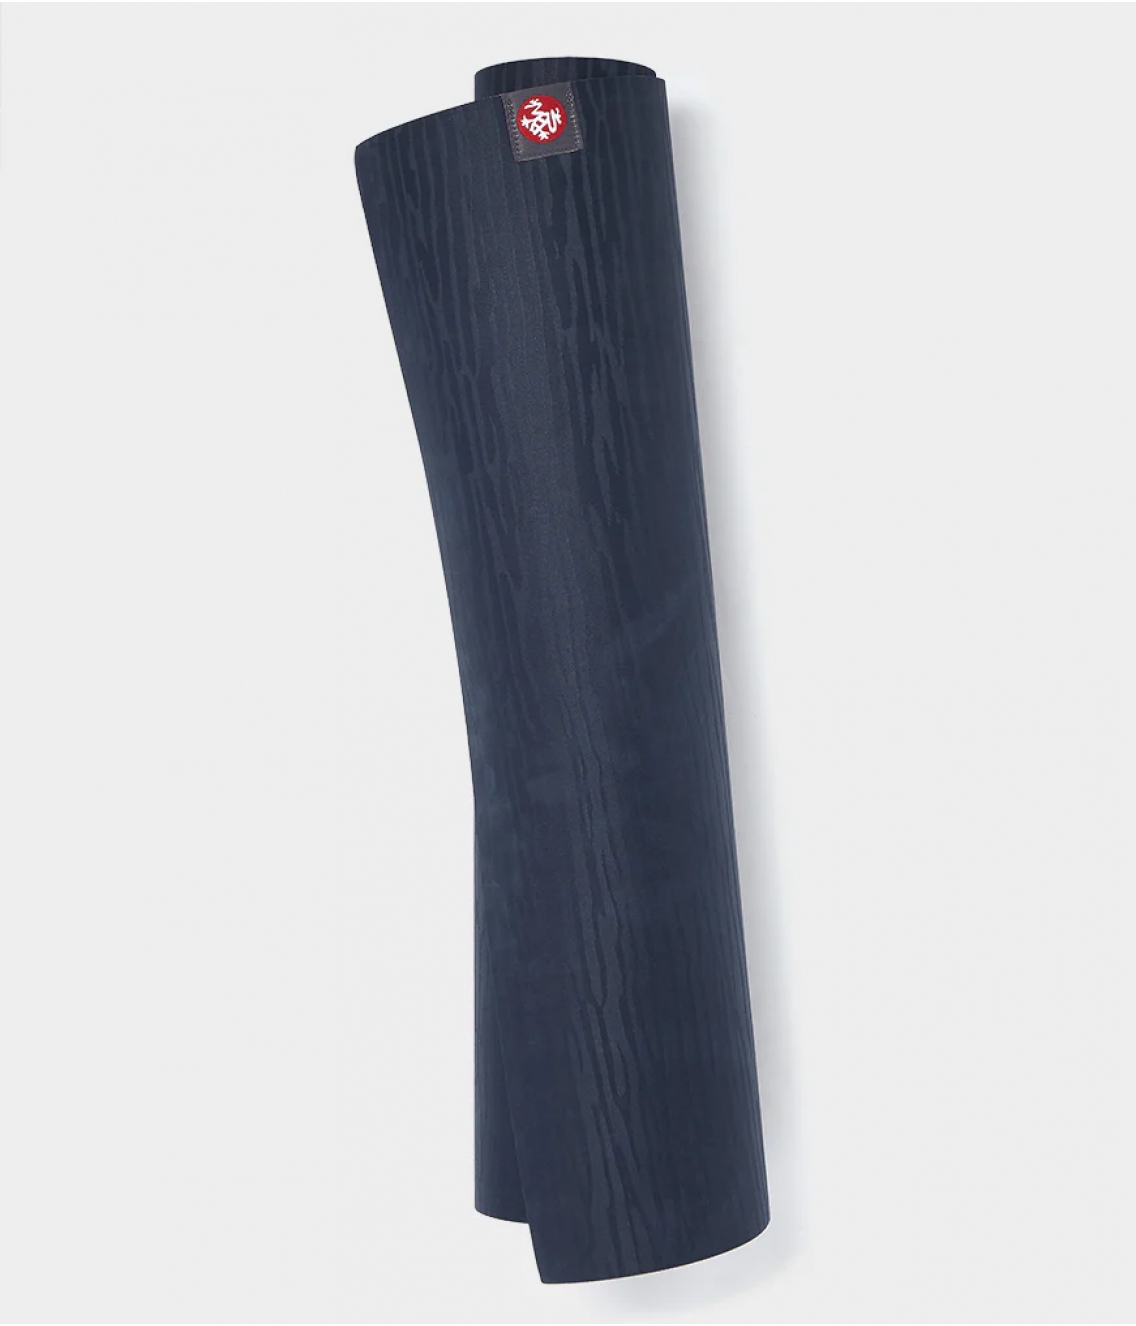 Профессиональный каучуковый коврик для йоги Manduka eKO lite 200*61*0,4 см - Midnight